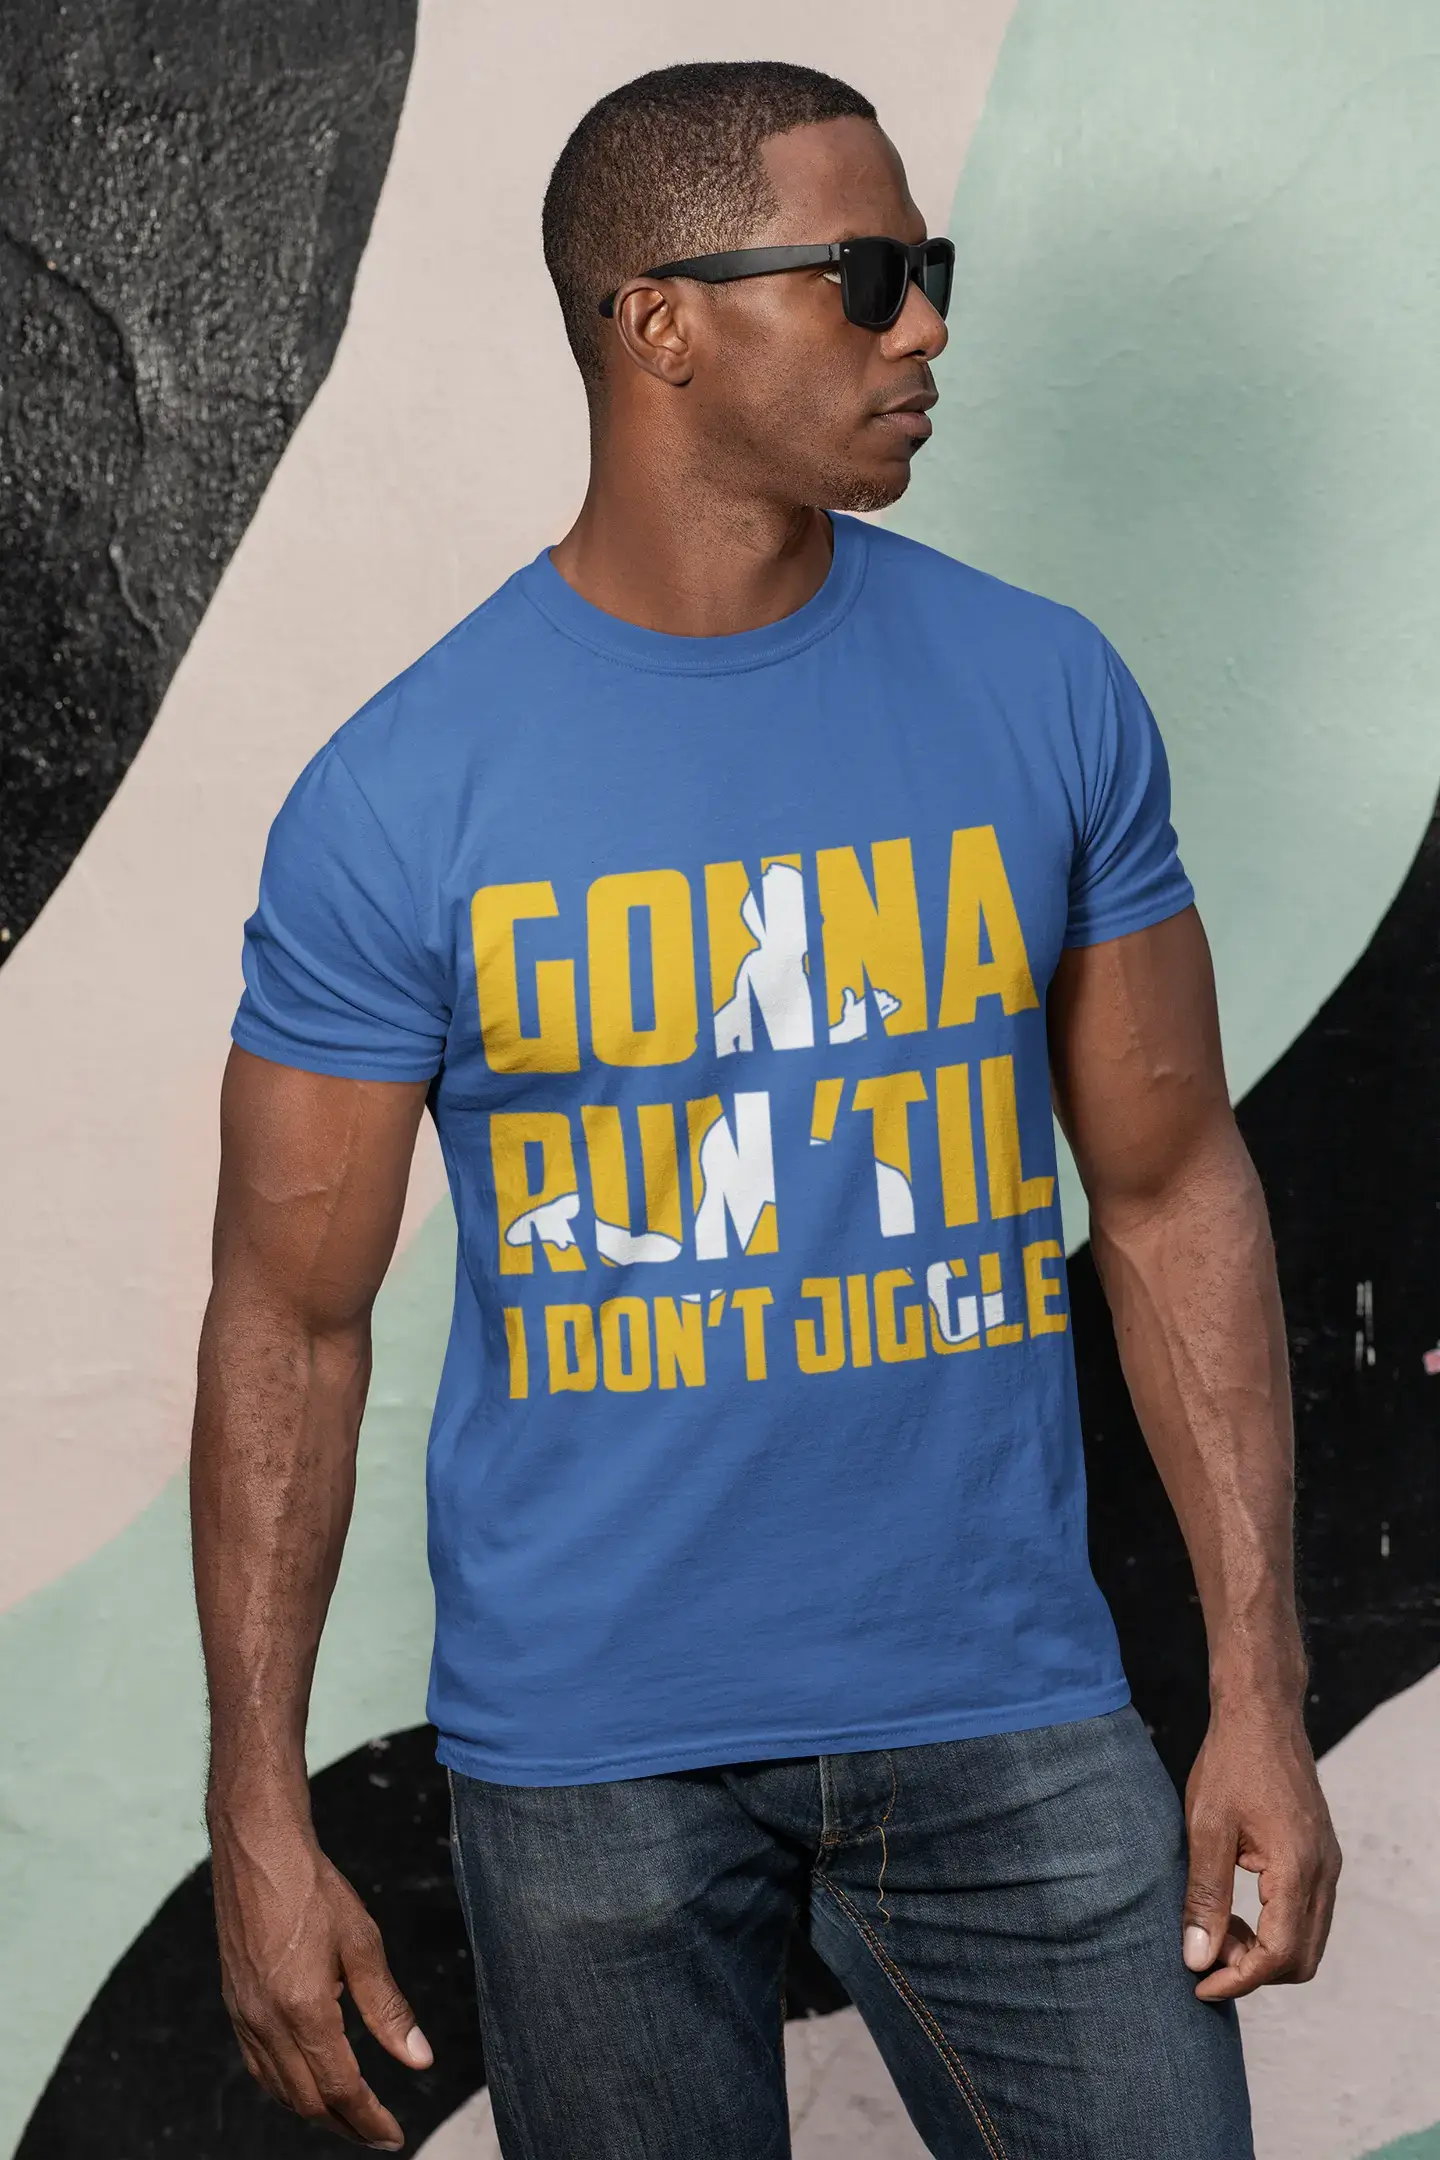 ULTRABASIC Men's Novelty T-Shirt Gonna Run Till I Don't Jiggle - Funny Runner Tee Shirt